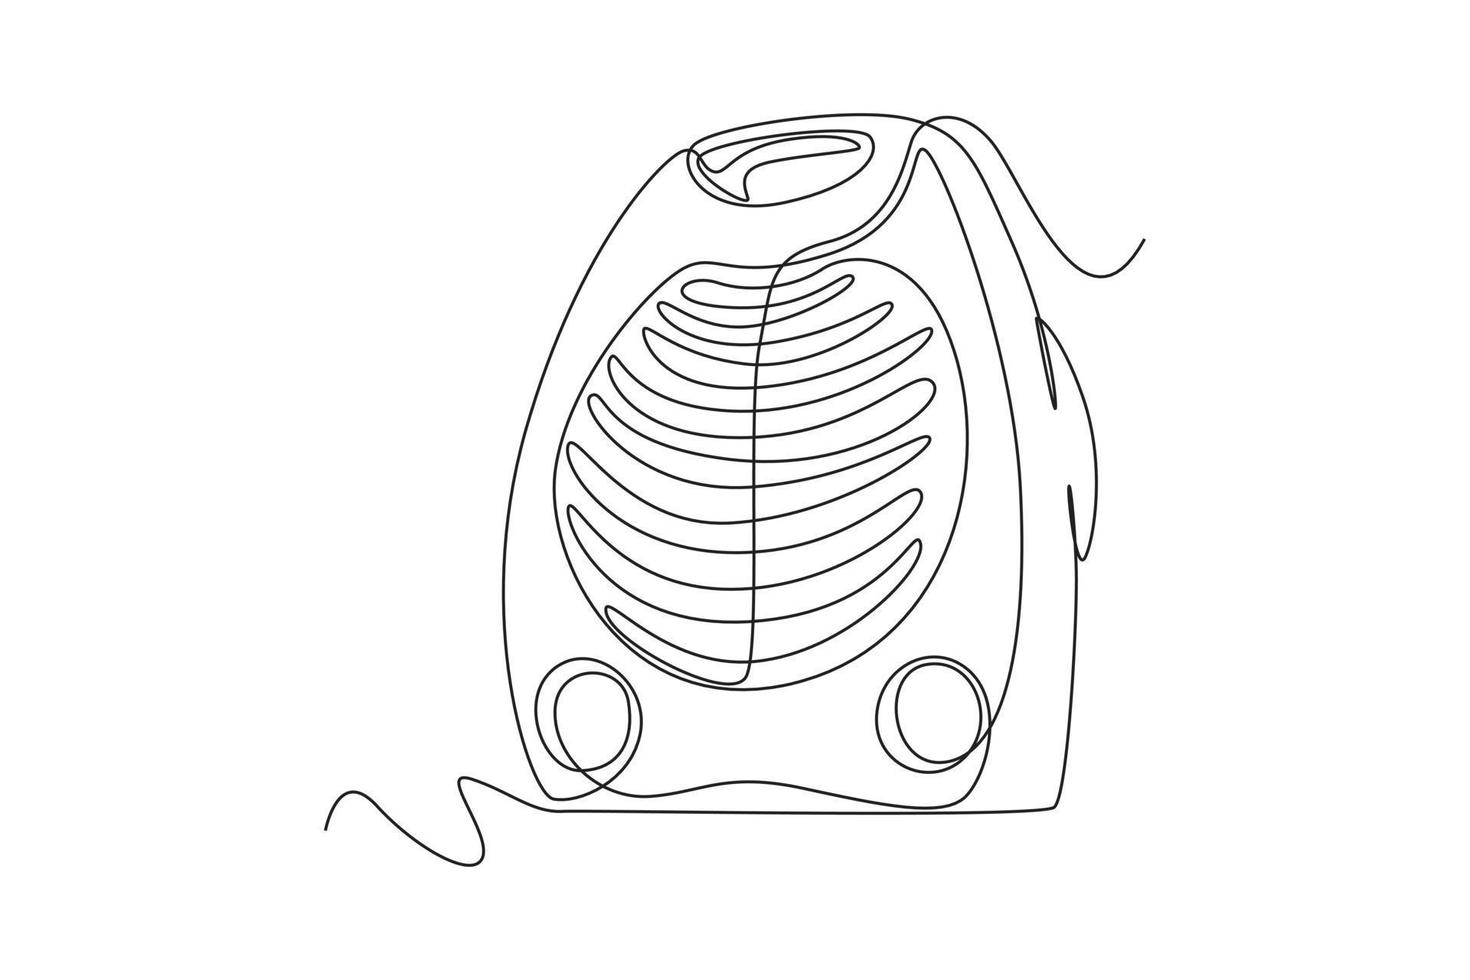 Single einer Linie Zeichnung modern elektrisch Fan. Elektrizität Zuhause Gerät Konzept. kontinuierlich Linie zeichnen Design Grafik Vektor Illustration.